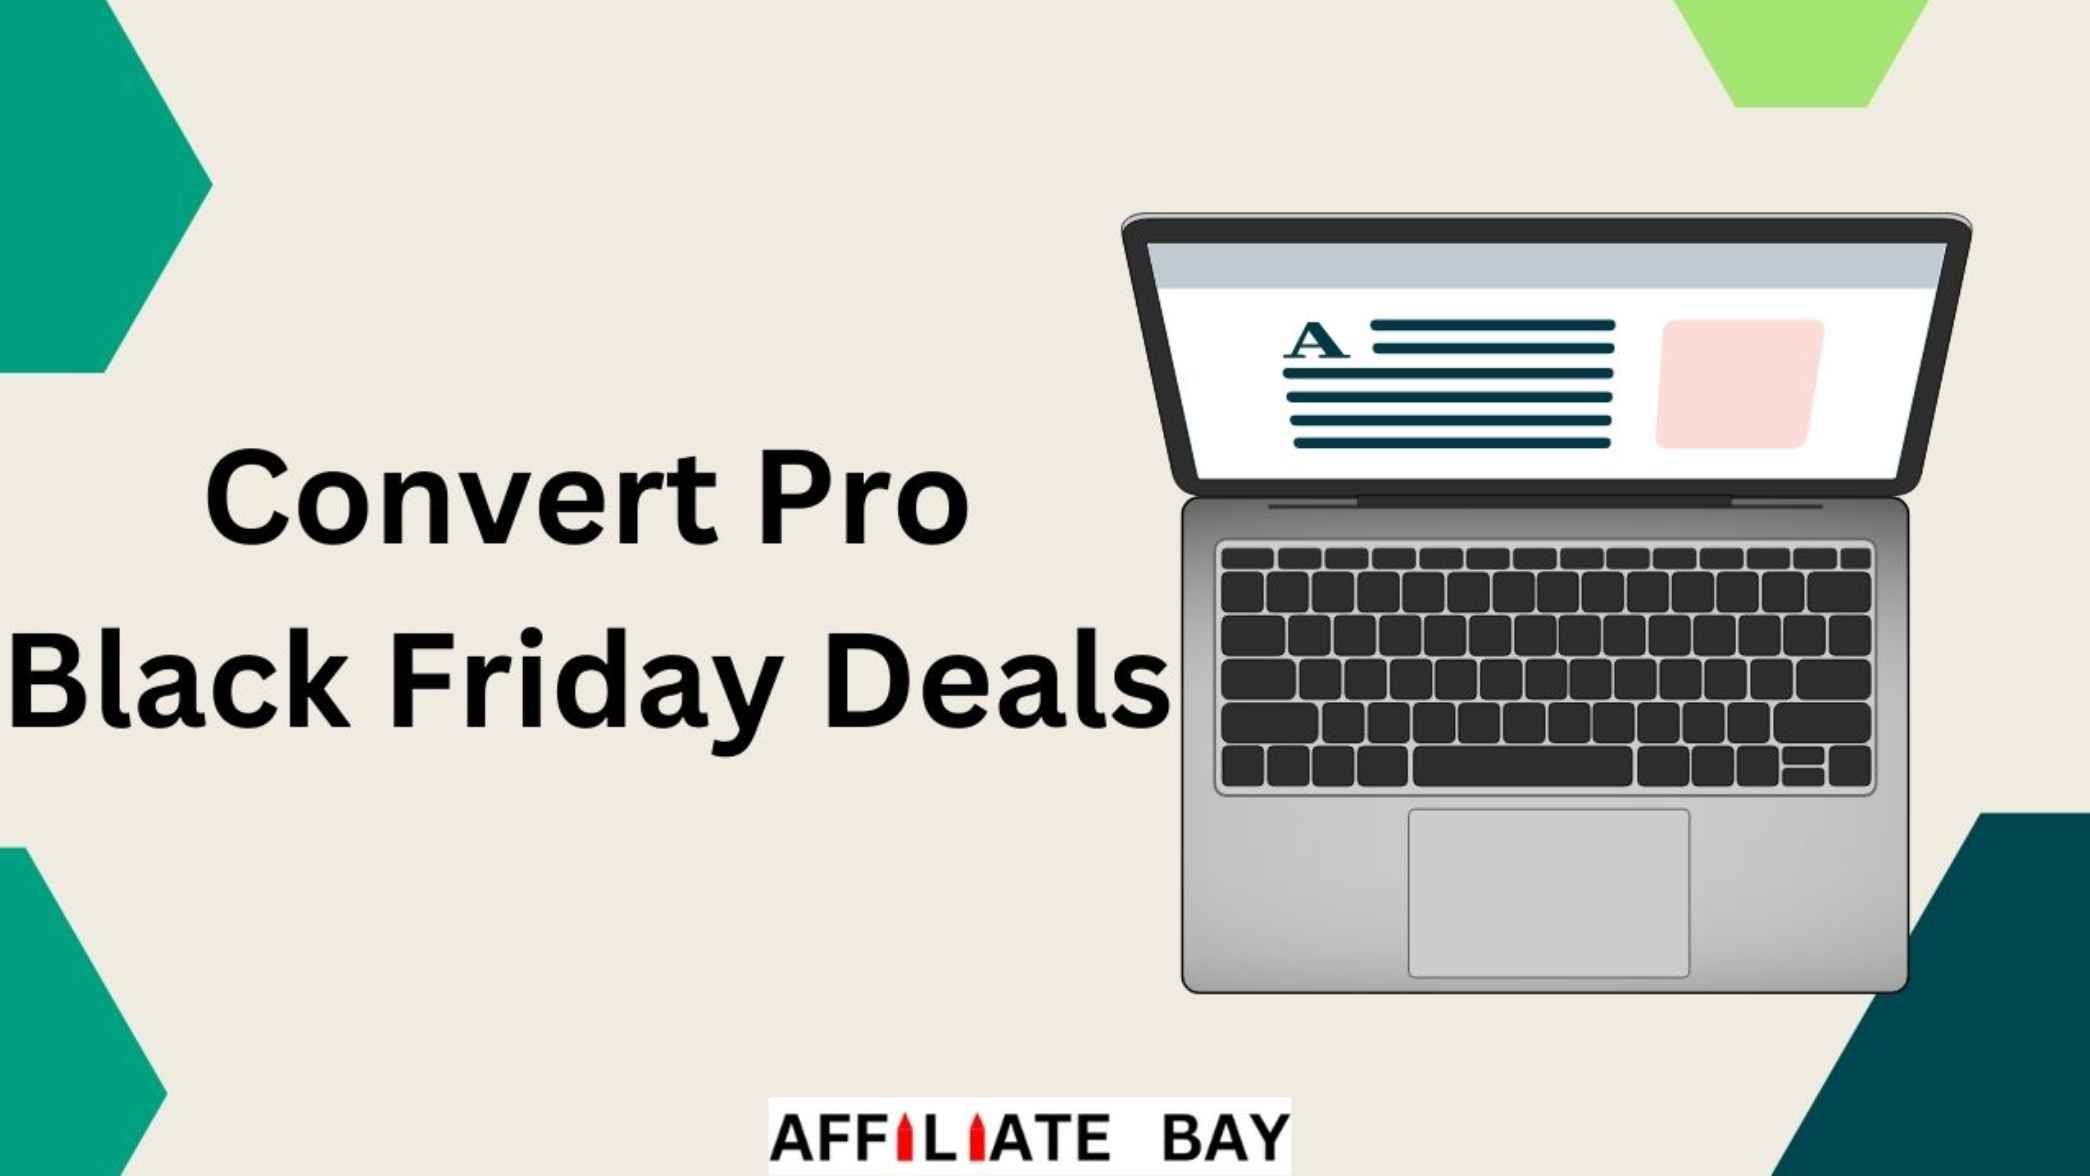 Convert Pro Black Friday Deals